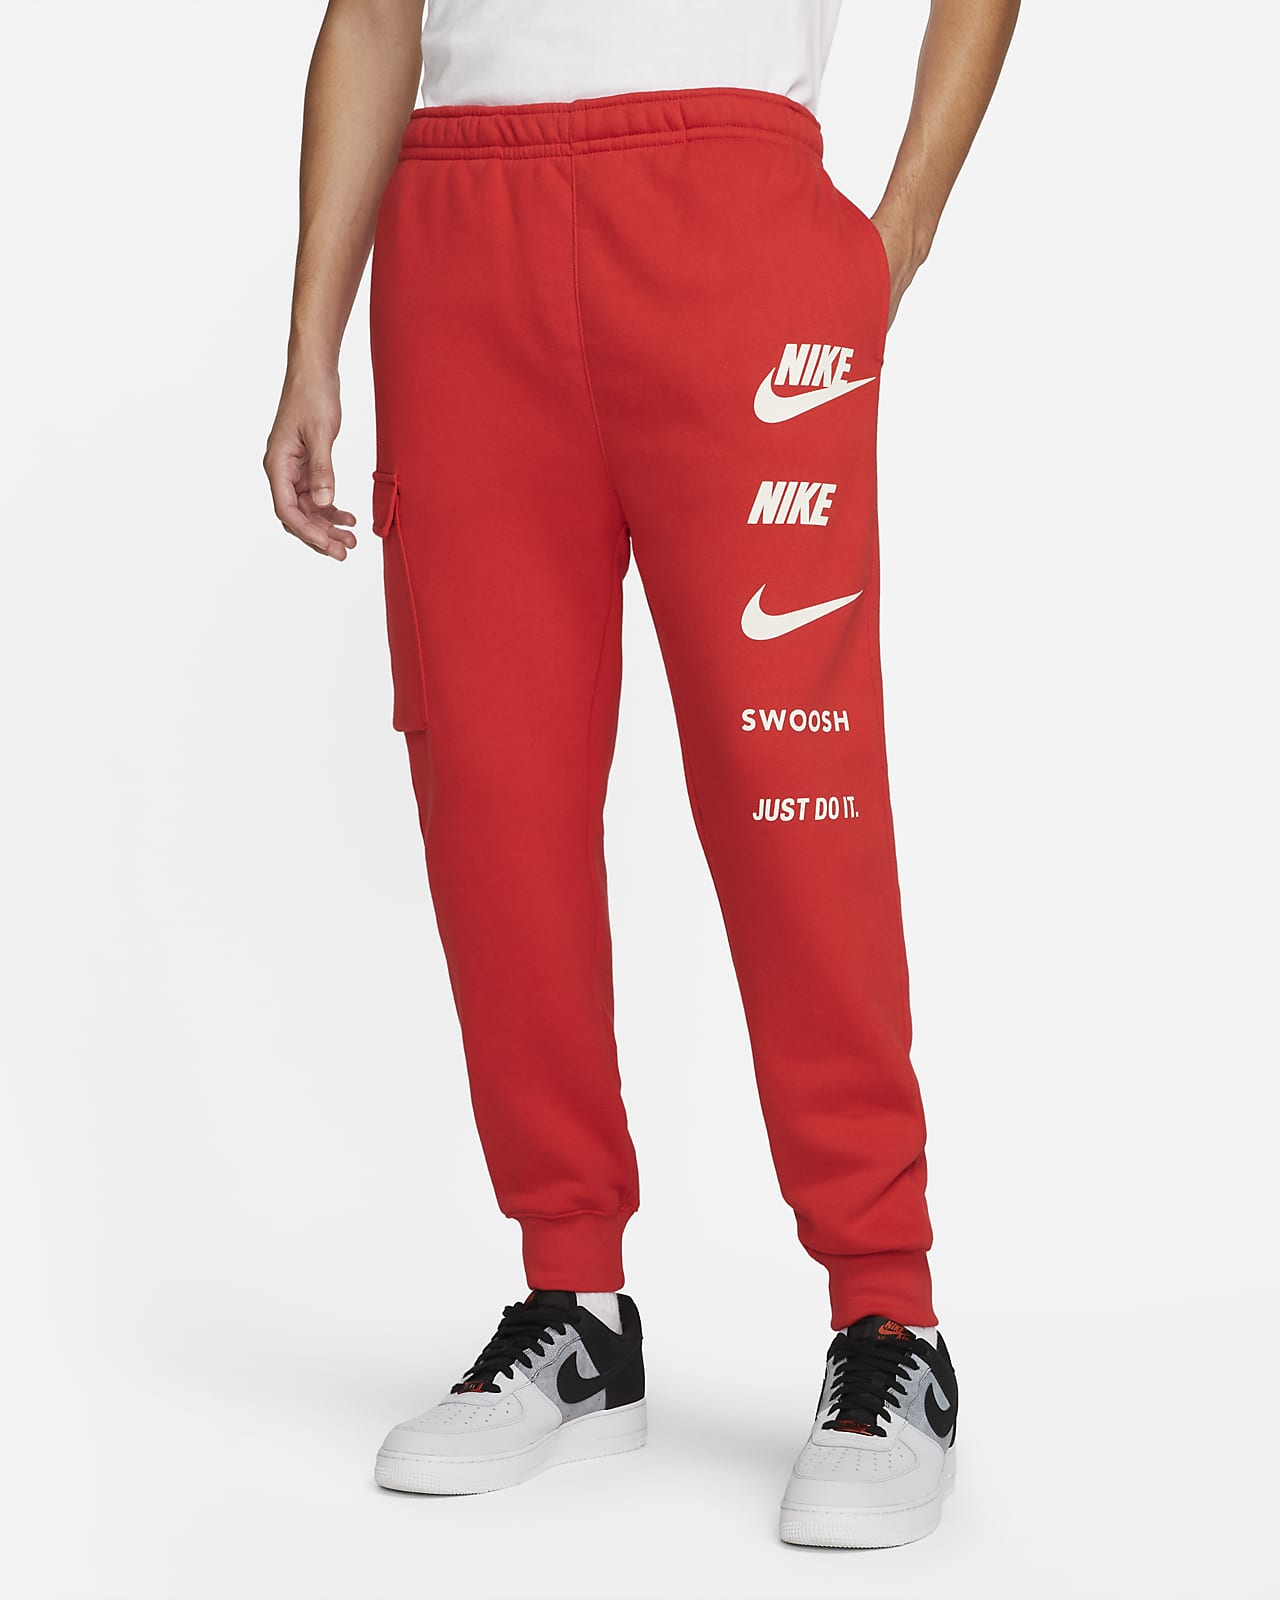 Nike Sportswear Standard Issue Men's Cargo Trousers. Nike